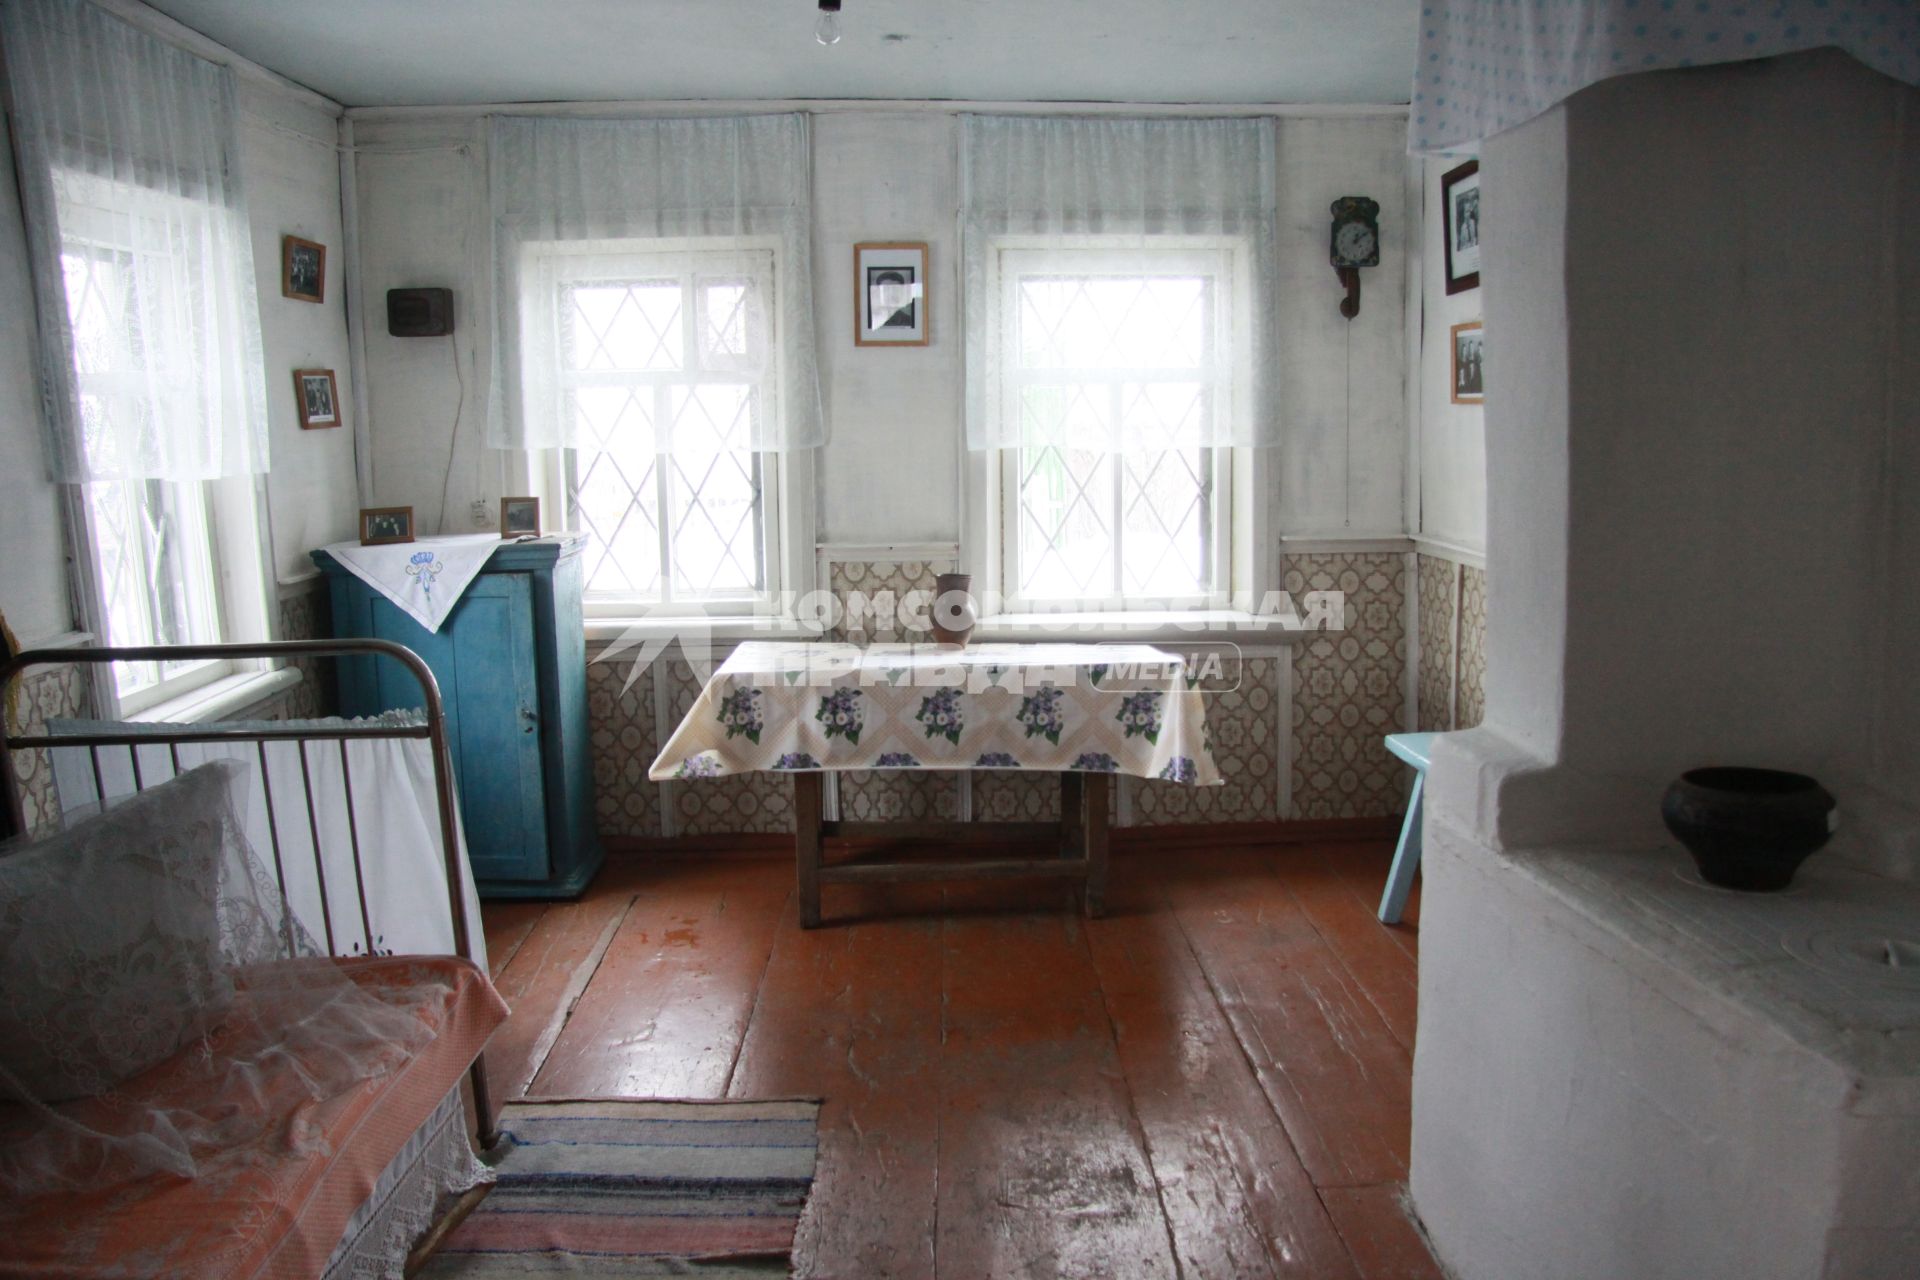 Дом-музей актера и режиссера Валерия Золотухина. На снимке: внутренние помещения музея.